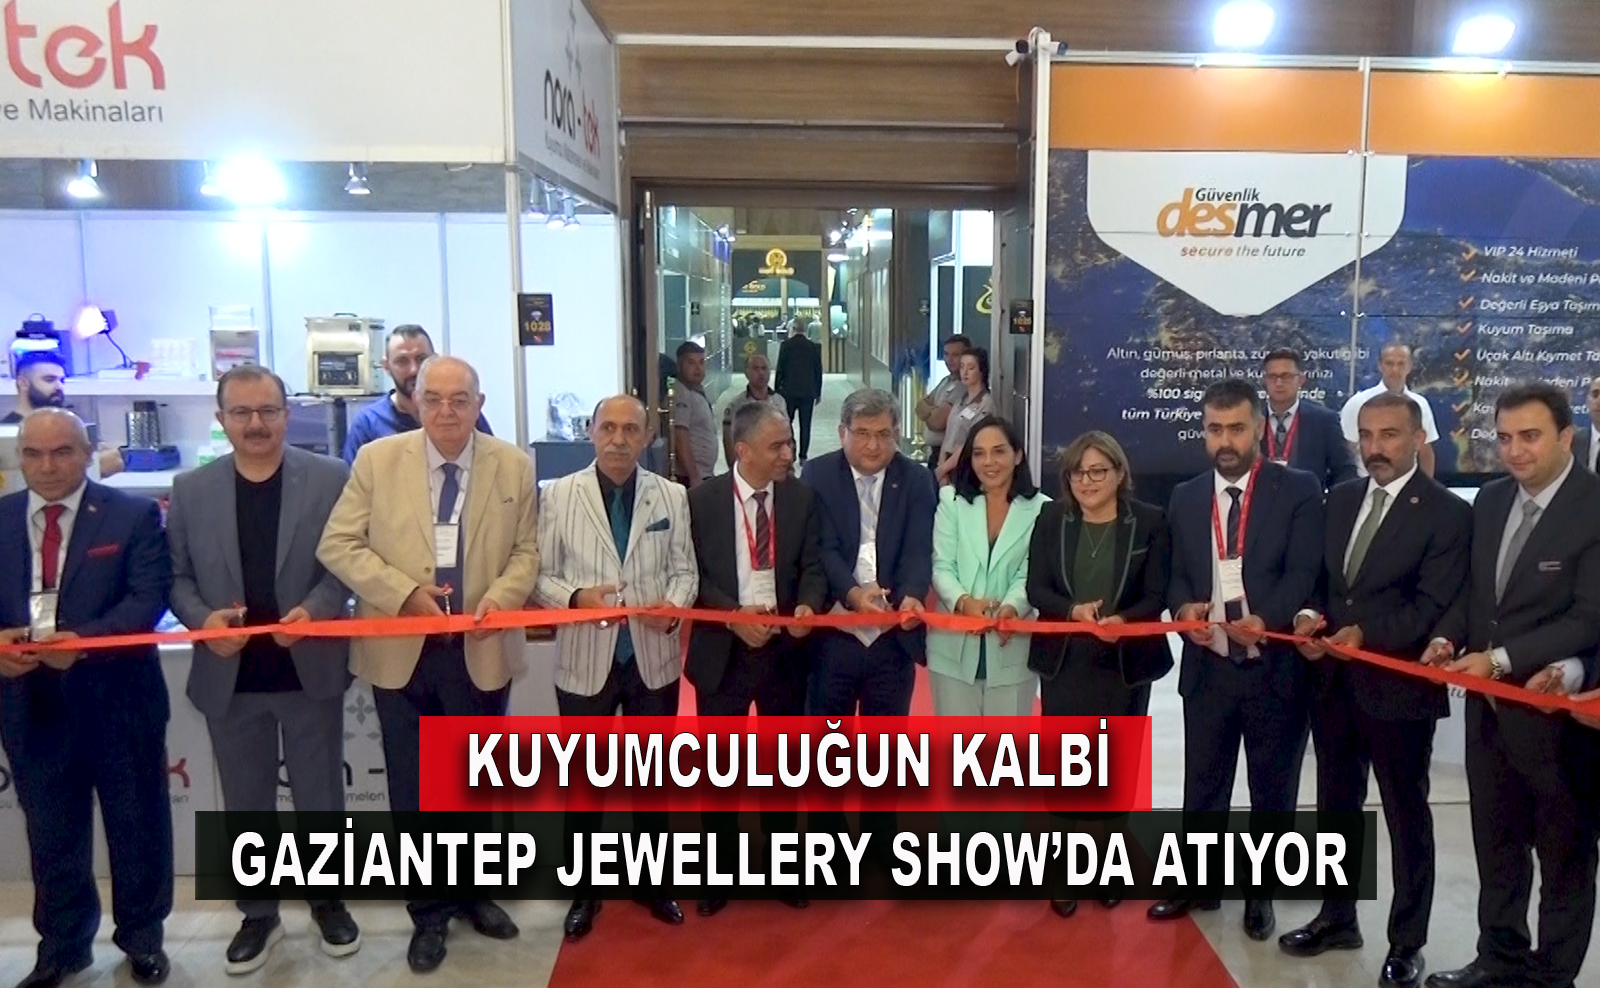 Gaziantep Jewellery Show Açılış